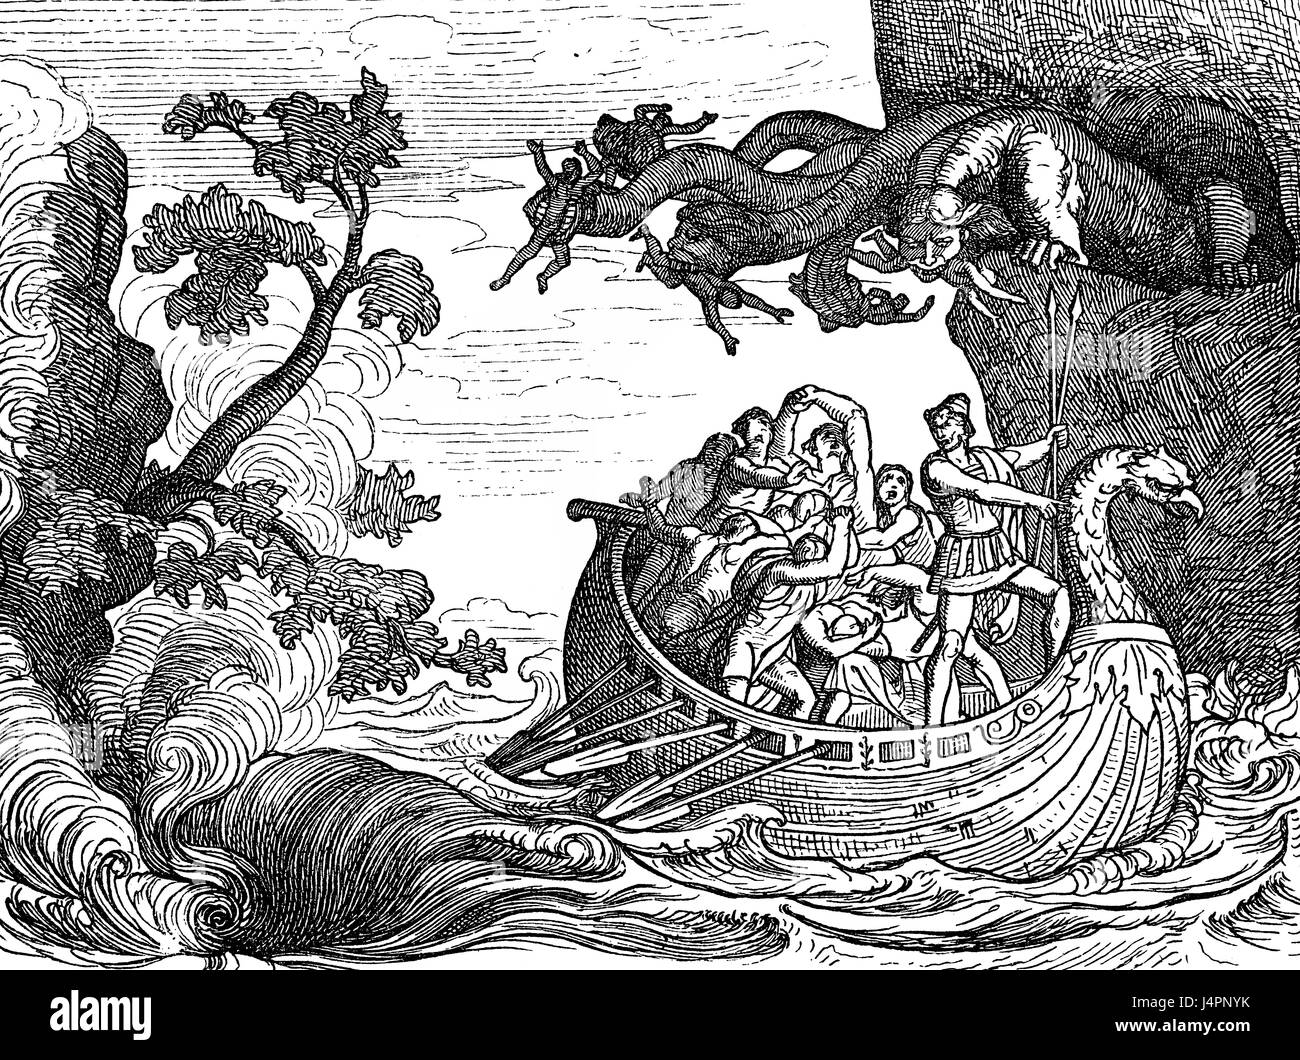 Il Sei-headed monster Scilla e Cariddi idromassaggio, l'Odissea di Omero Foto Stock